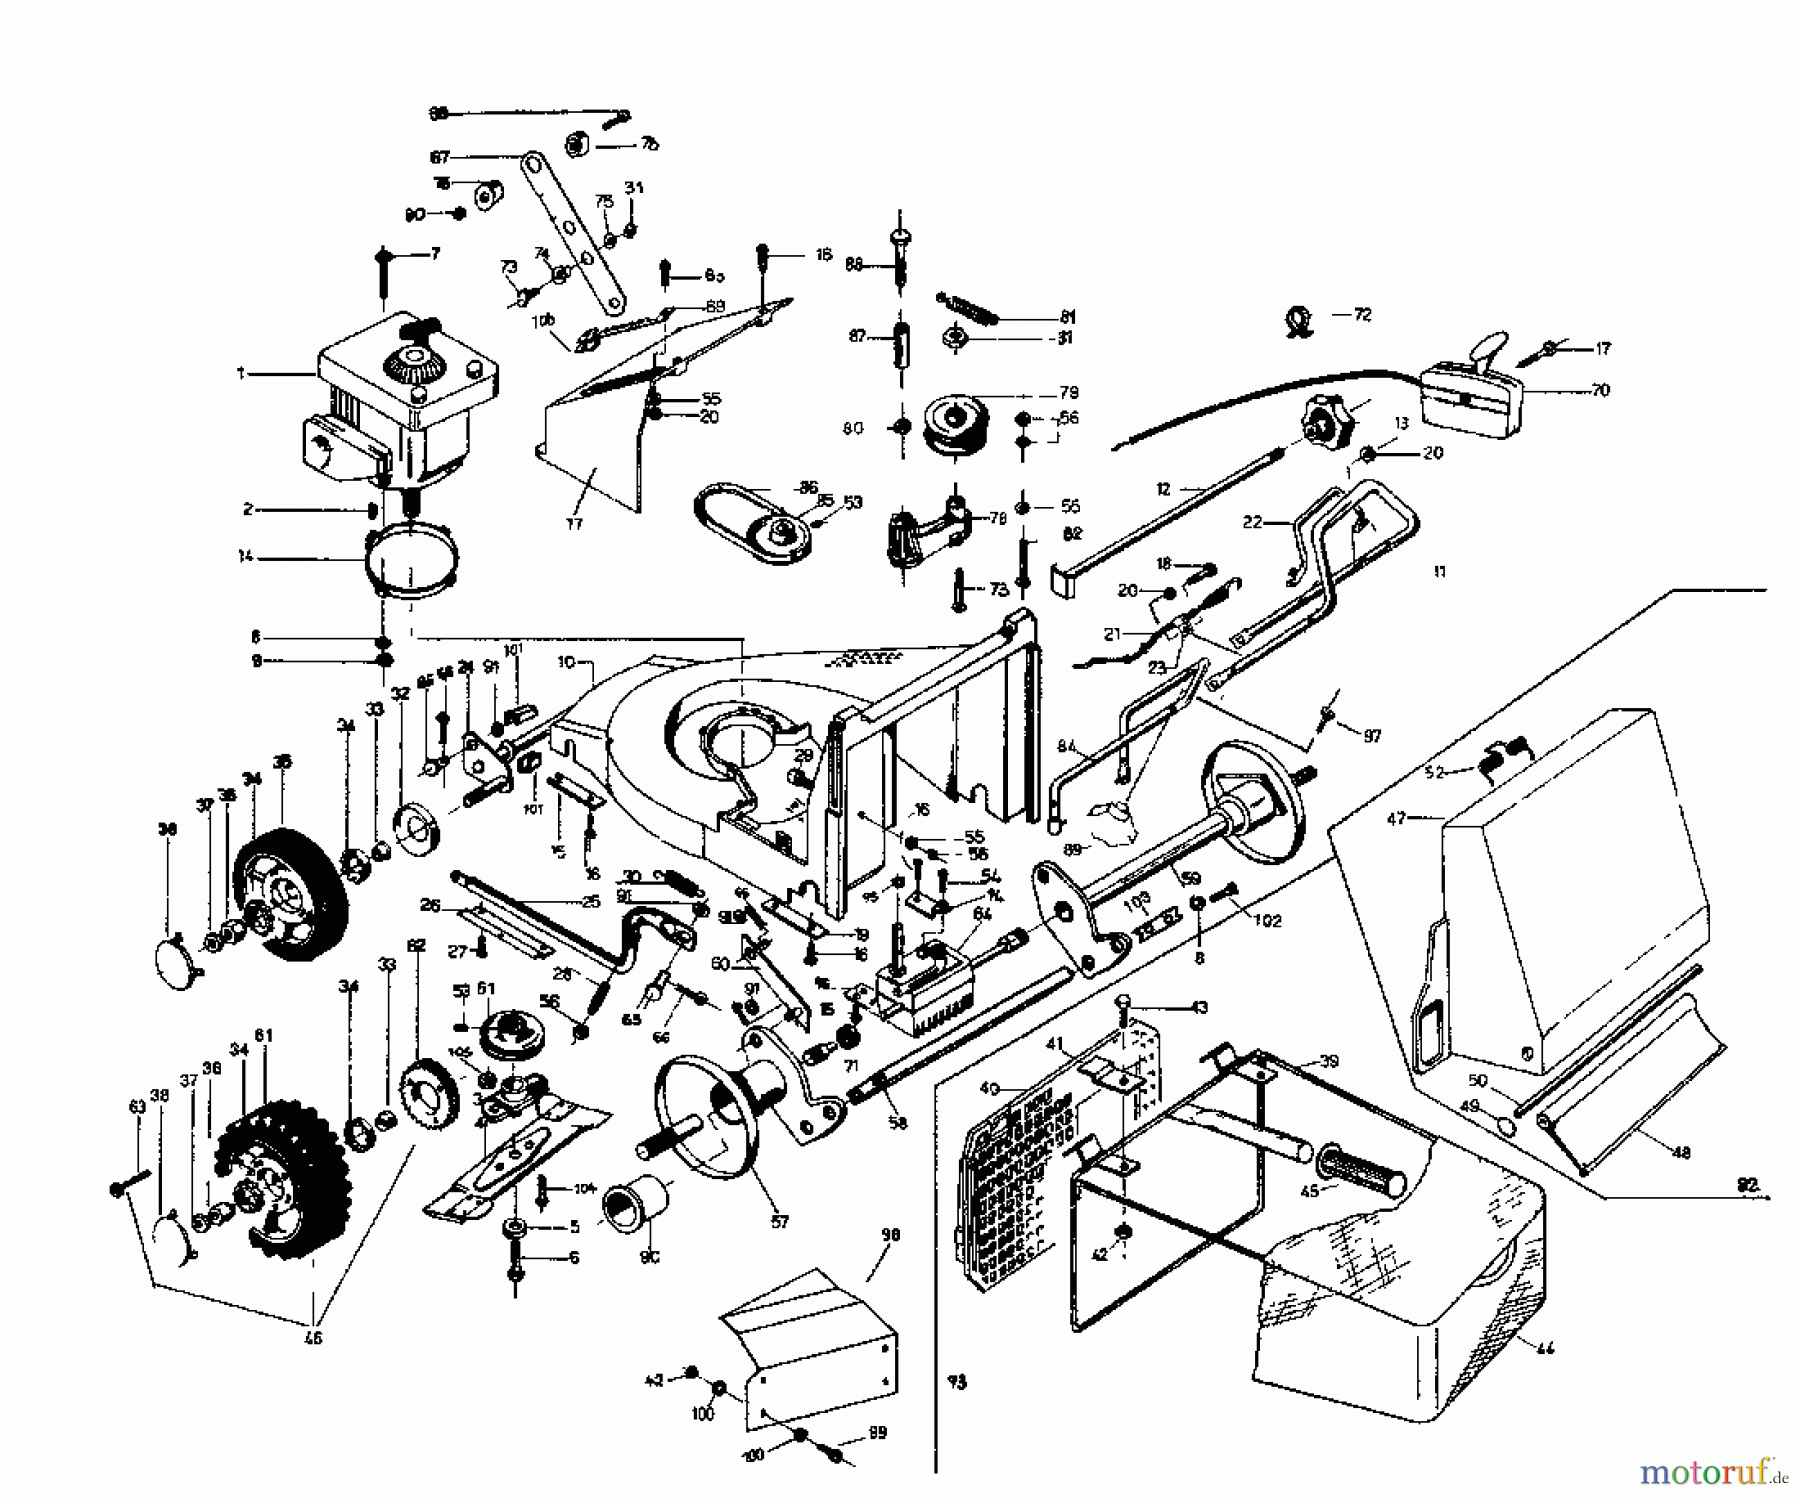  Rotaro Motormäher mit Antrieb ROTARO  48 S 188-0157  (1988) Grundgerät